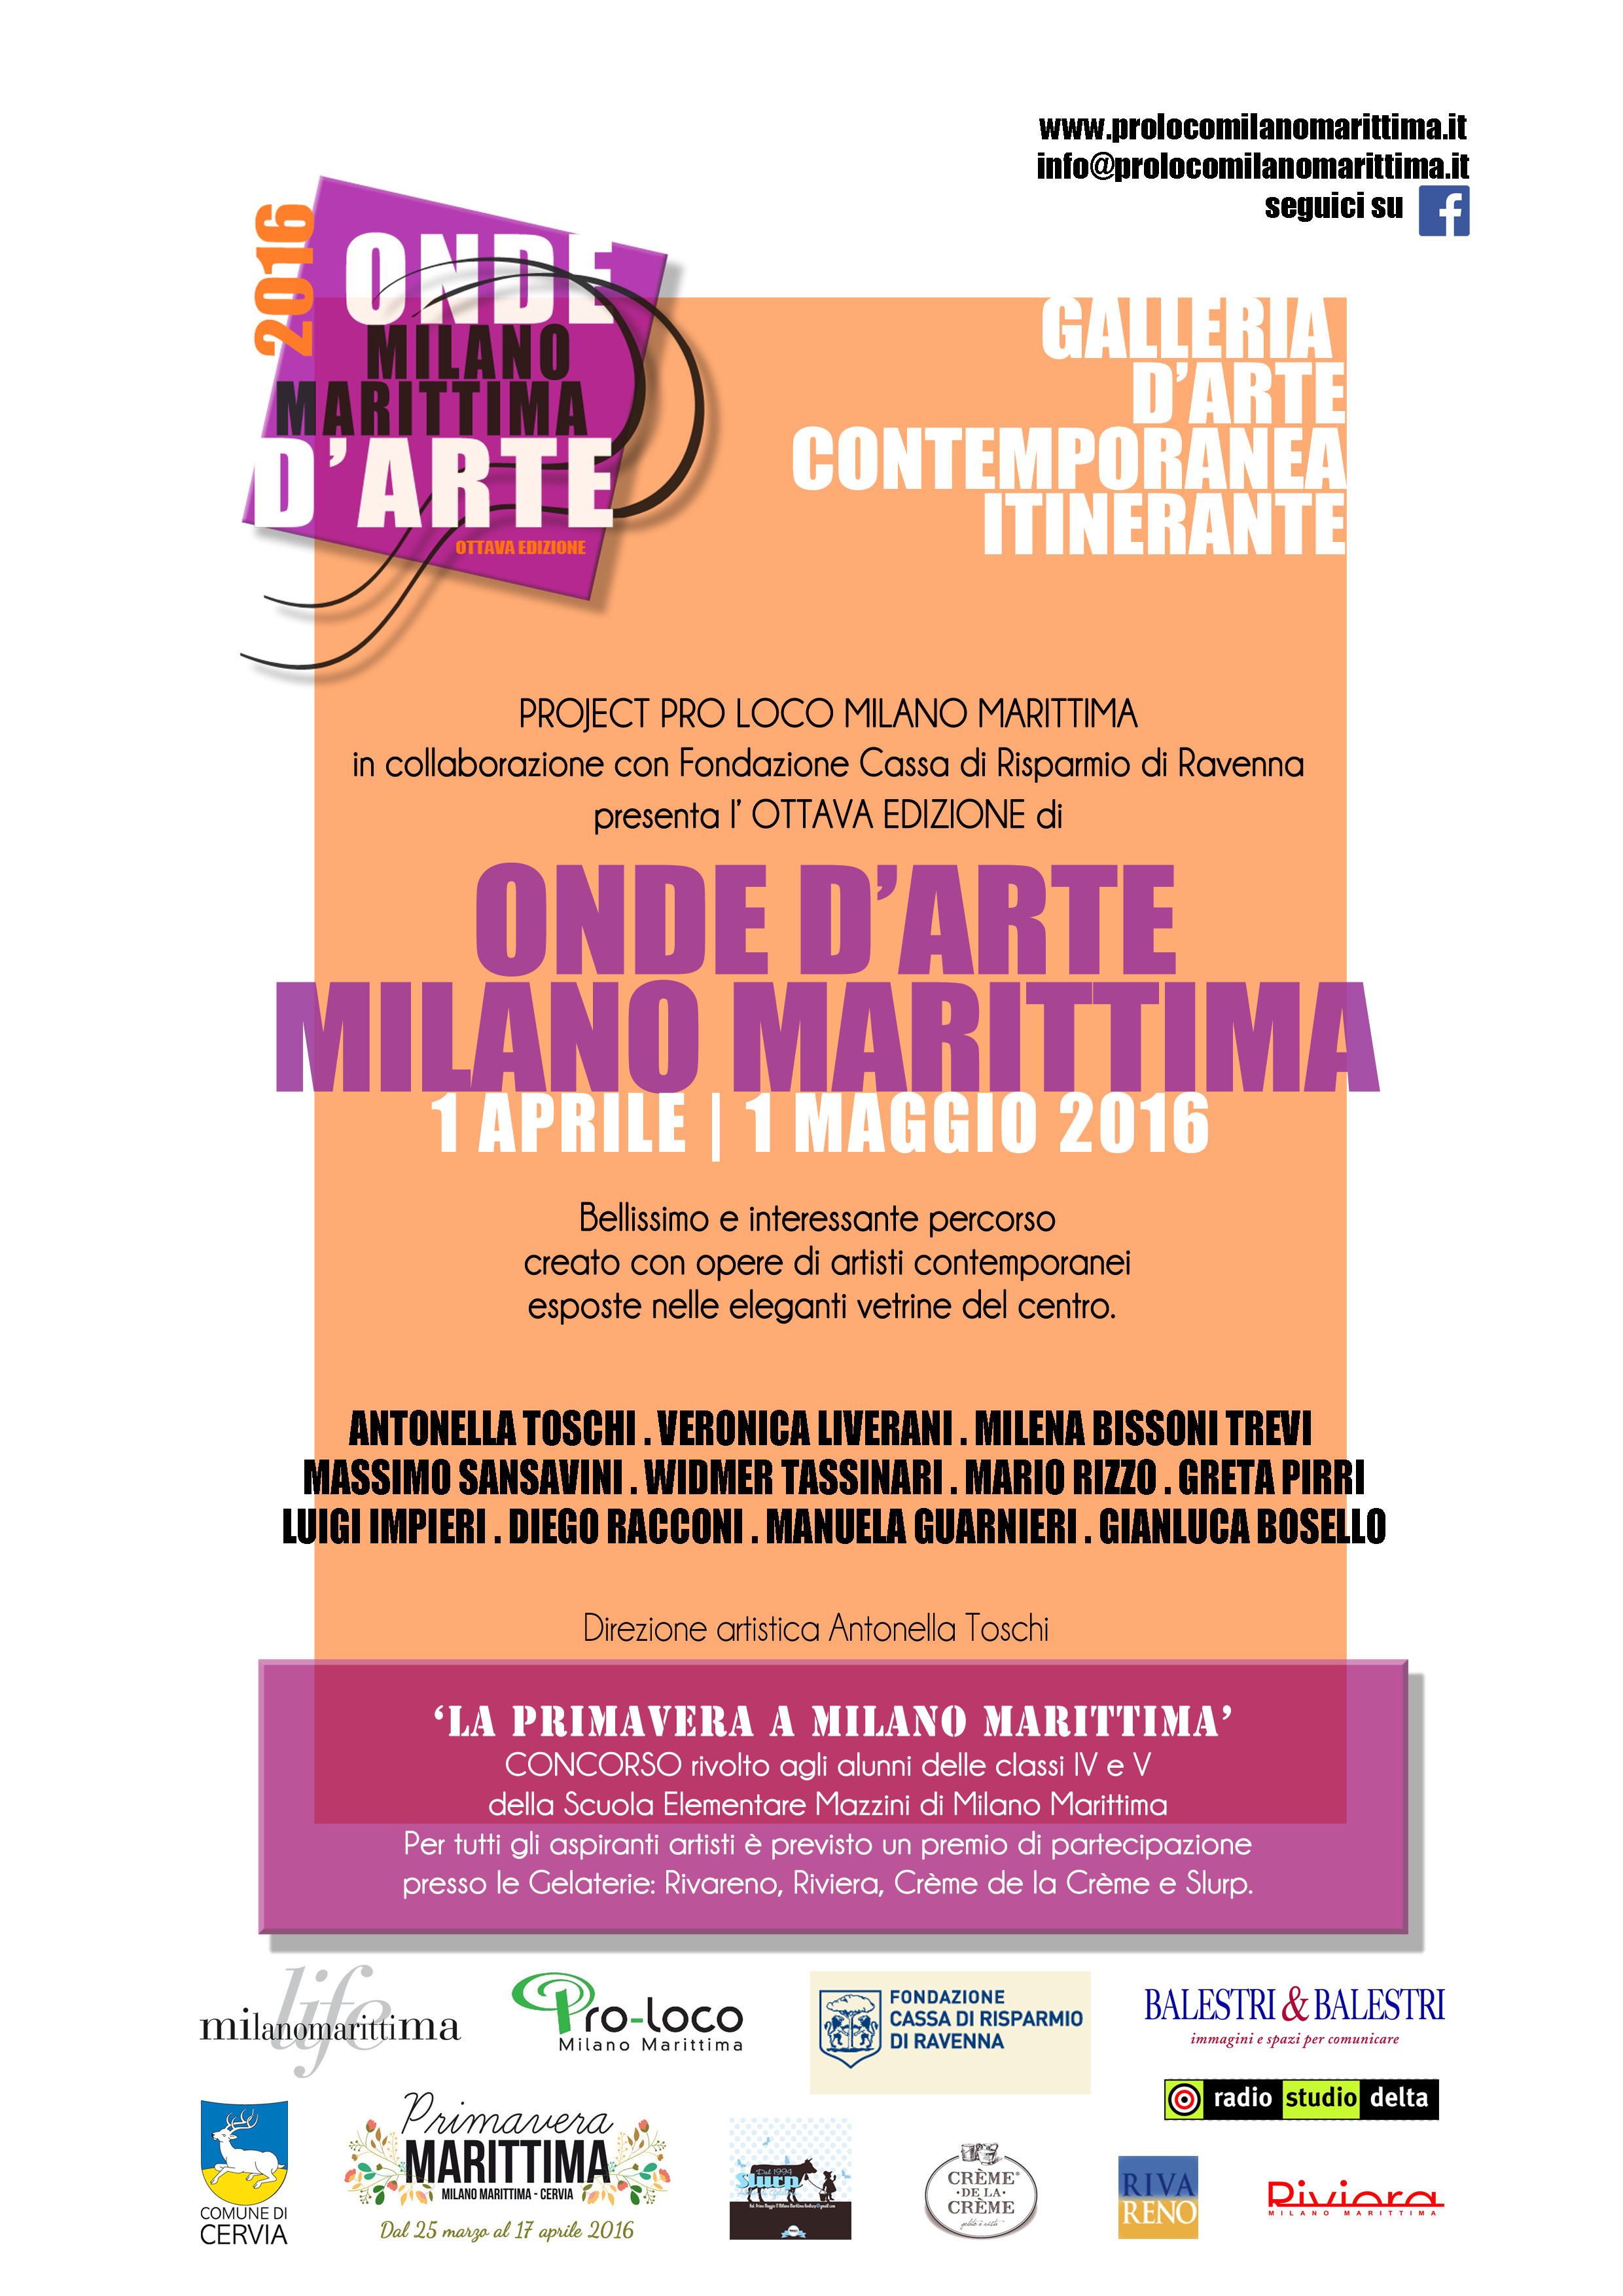 Onde d'Arte 2016 | Exhibition in Milano Marittima 1 apr - 1 may